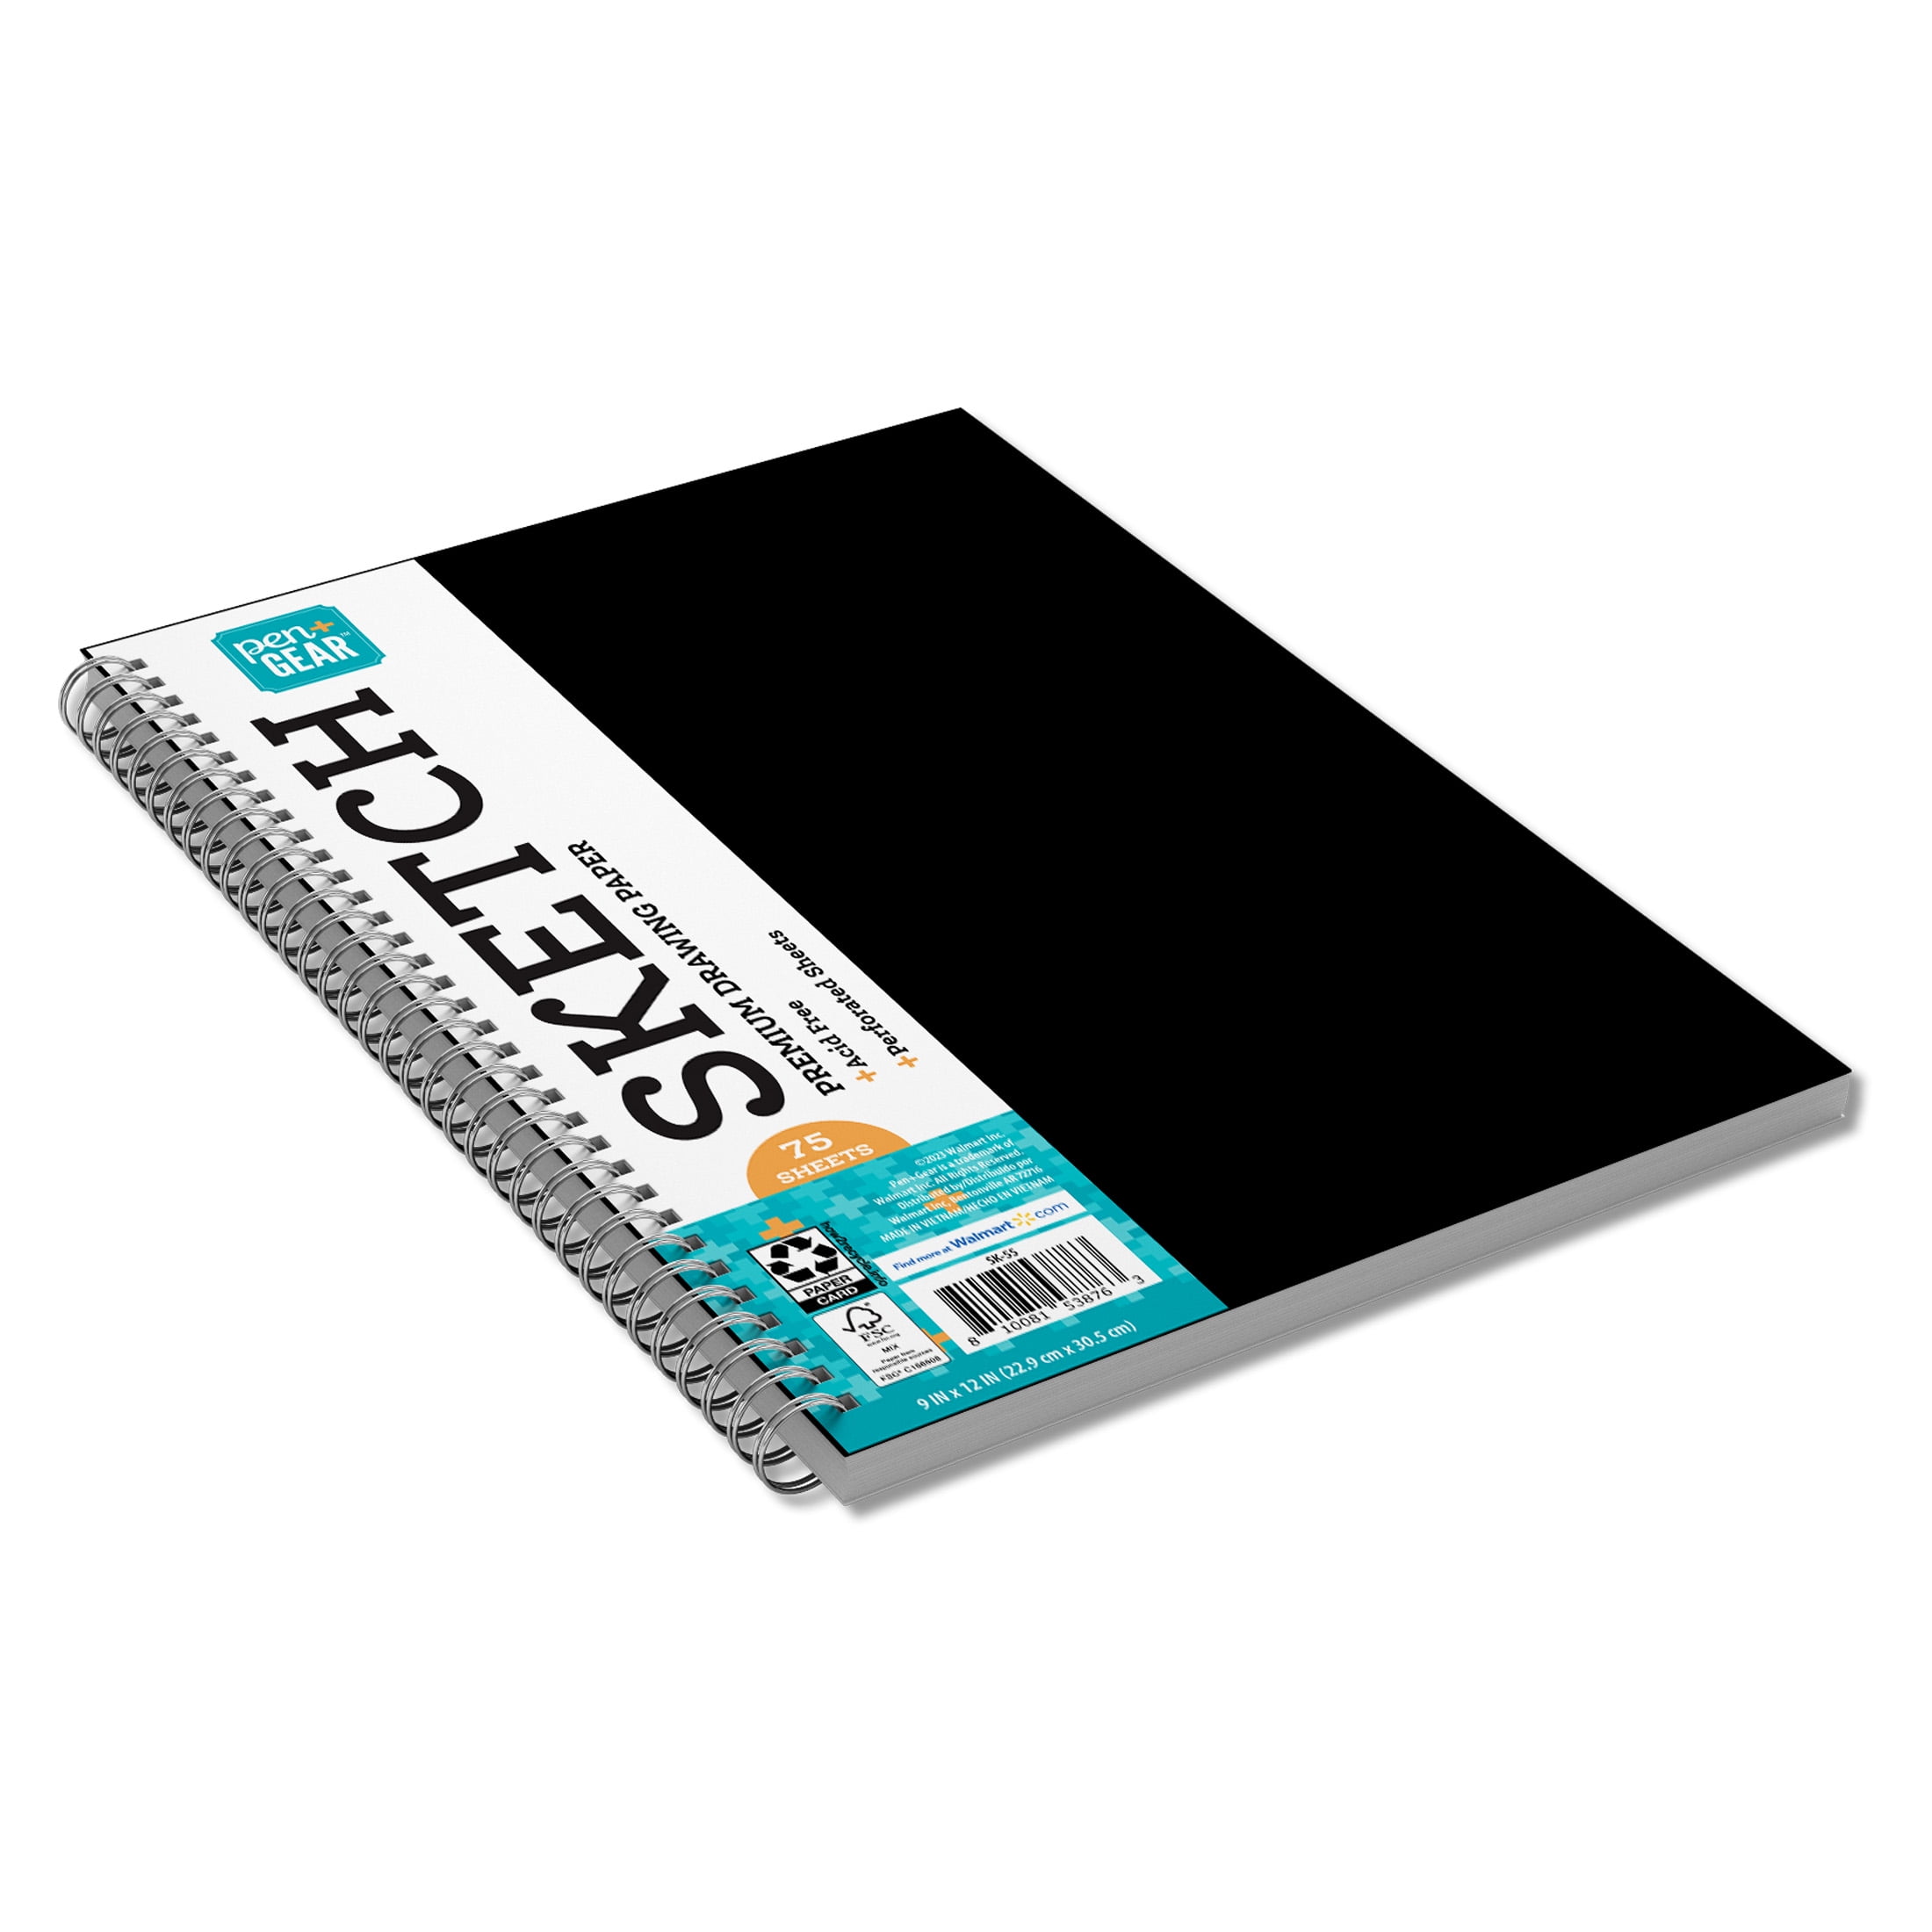  Gel Ink Pens, Art Supplies for Kids 9-12, Sketch Pad,  Sketchbook for Drawing Kit, 12 Gel Pens for Black Paper Notebook. Sketch  Book for Kids & Adults. Color Paper & Gel